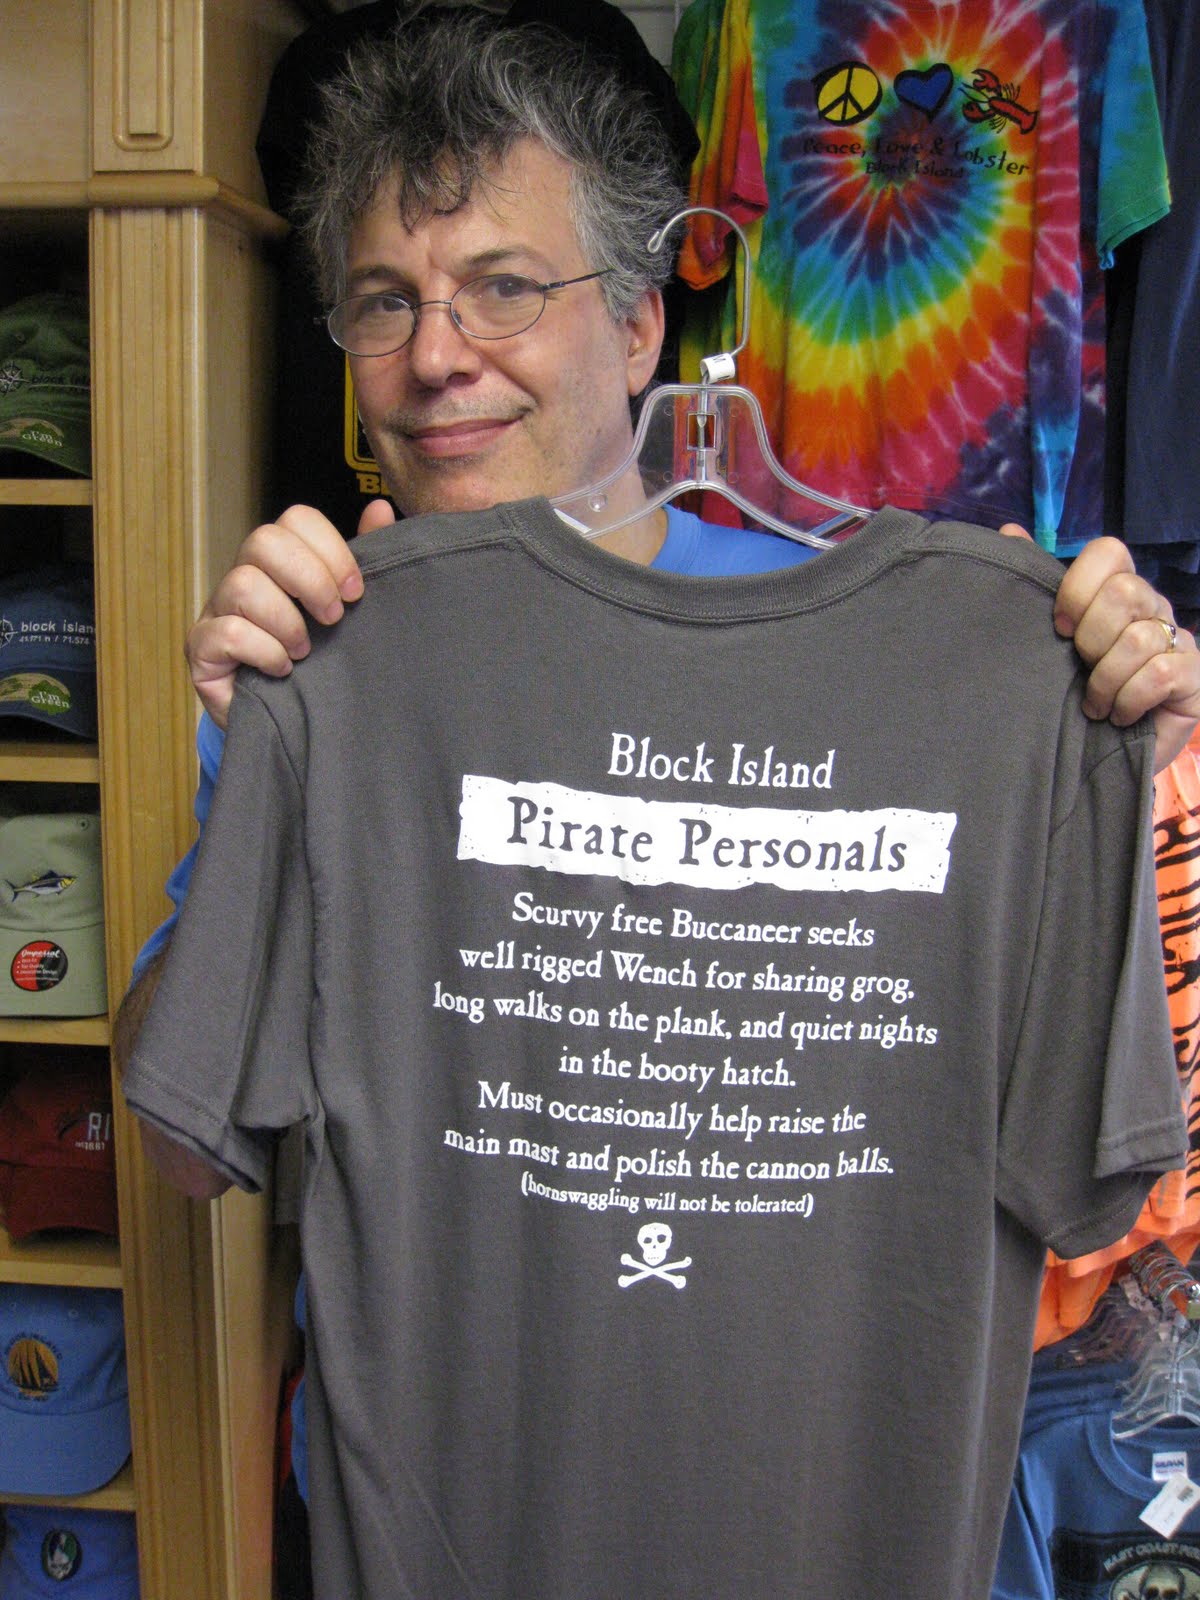 http://2.bp.blogspot.com/_kng9nNTclfs/TENjlEXgwcI/AAAAAAAABSU/9EbZsTKRZ-E/s1600/028_K_PiratePersonals_T-shirt.JPG